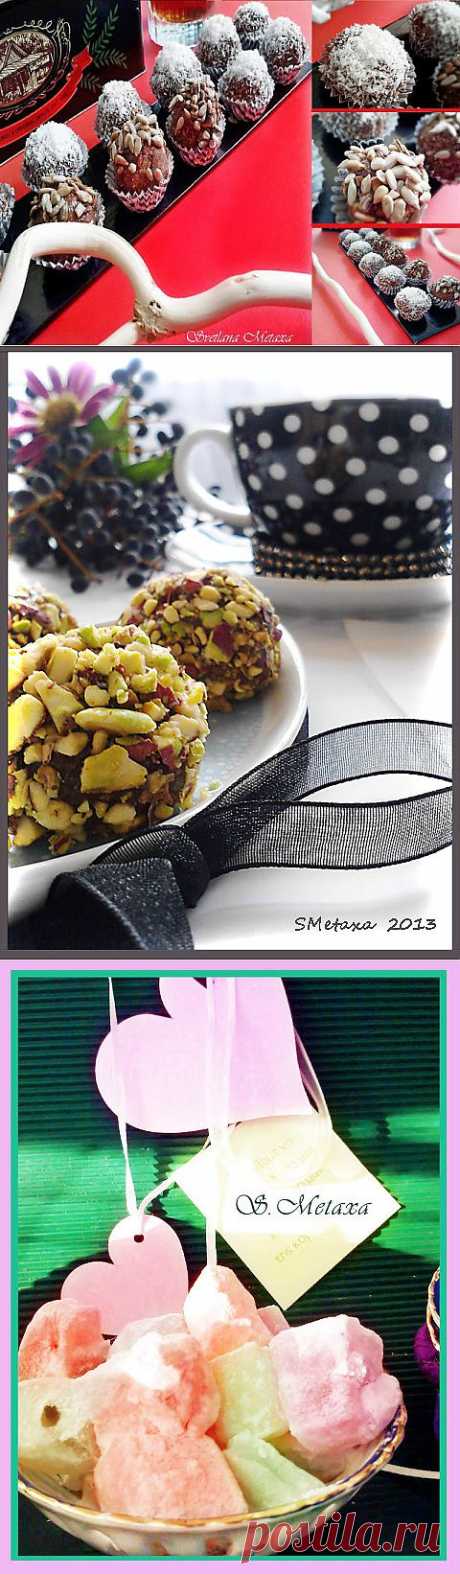 Новогодний десерт - конфетки и рахат-лукум от Светланы Метакса..